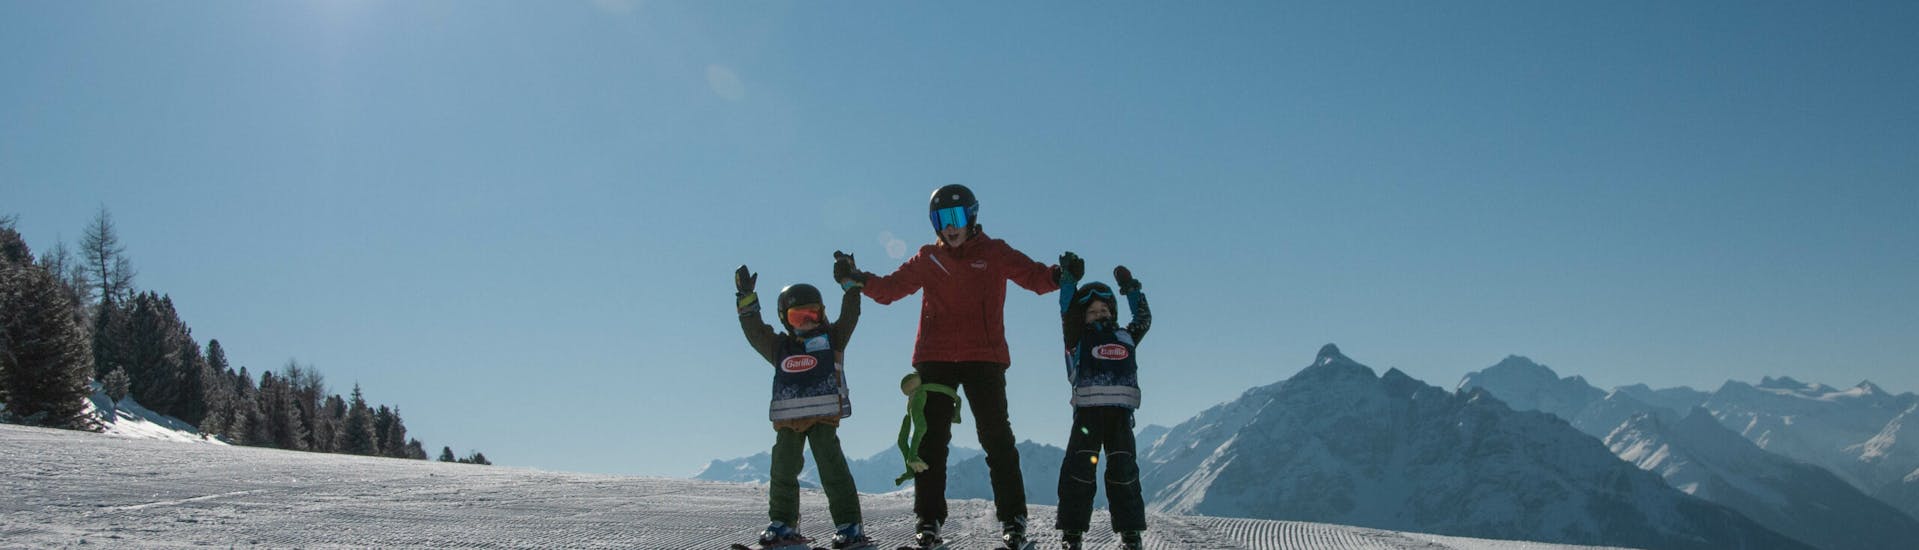 Privé-skilessen voor gezinnen voor gevorderden met Ski- & Snowboardschule Innsbruck.